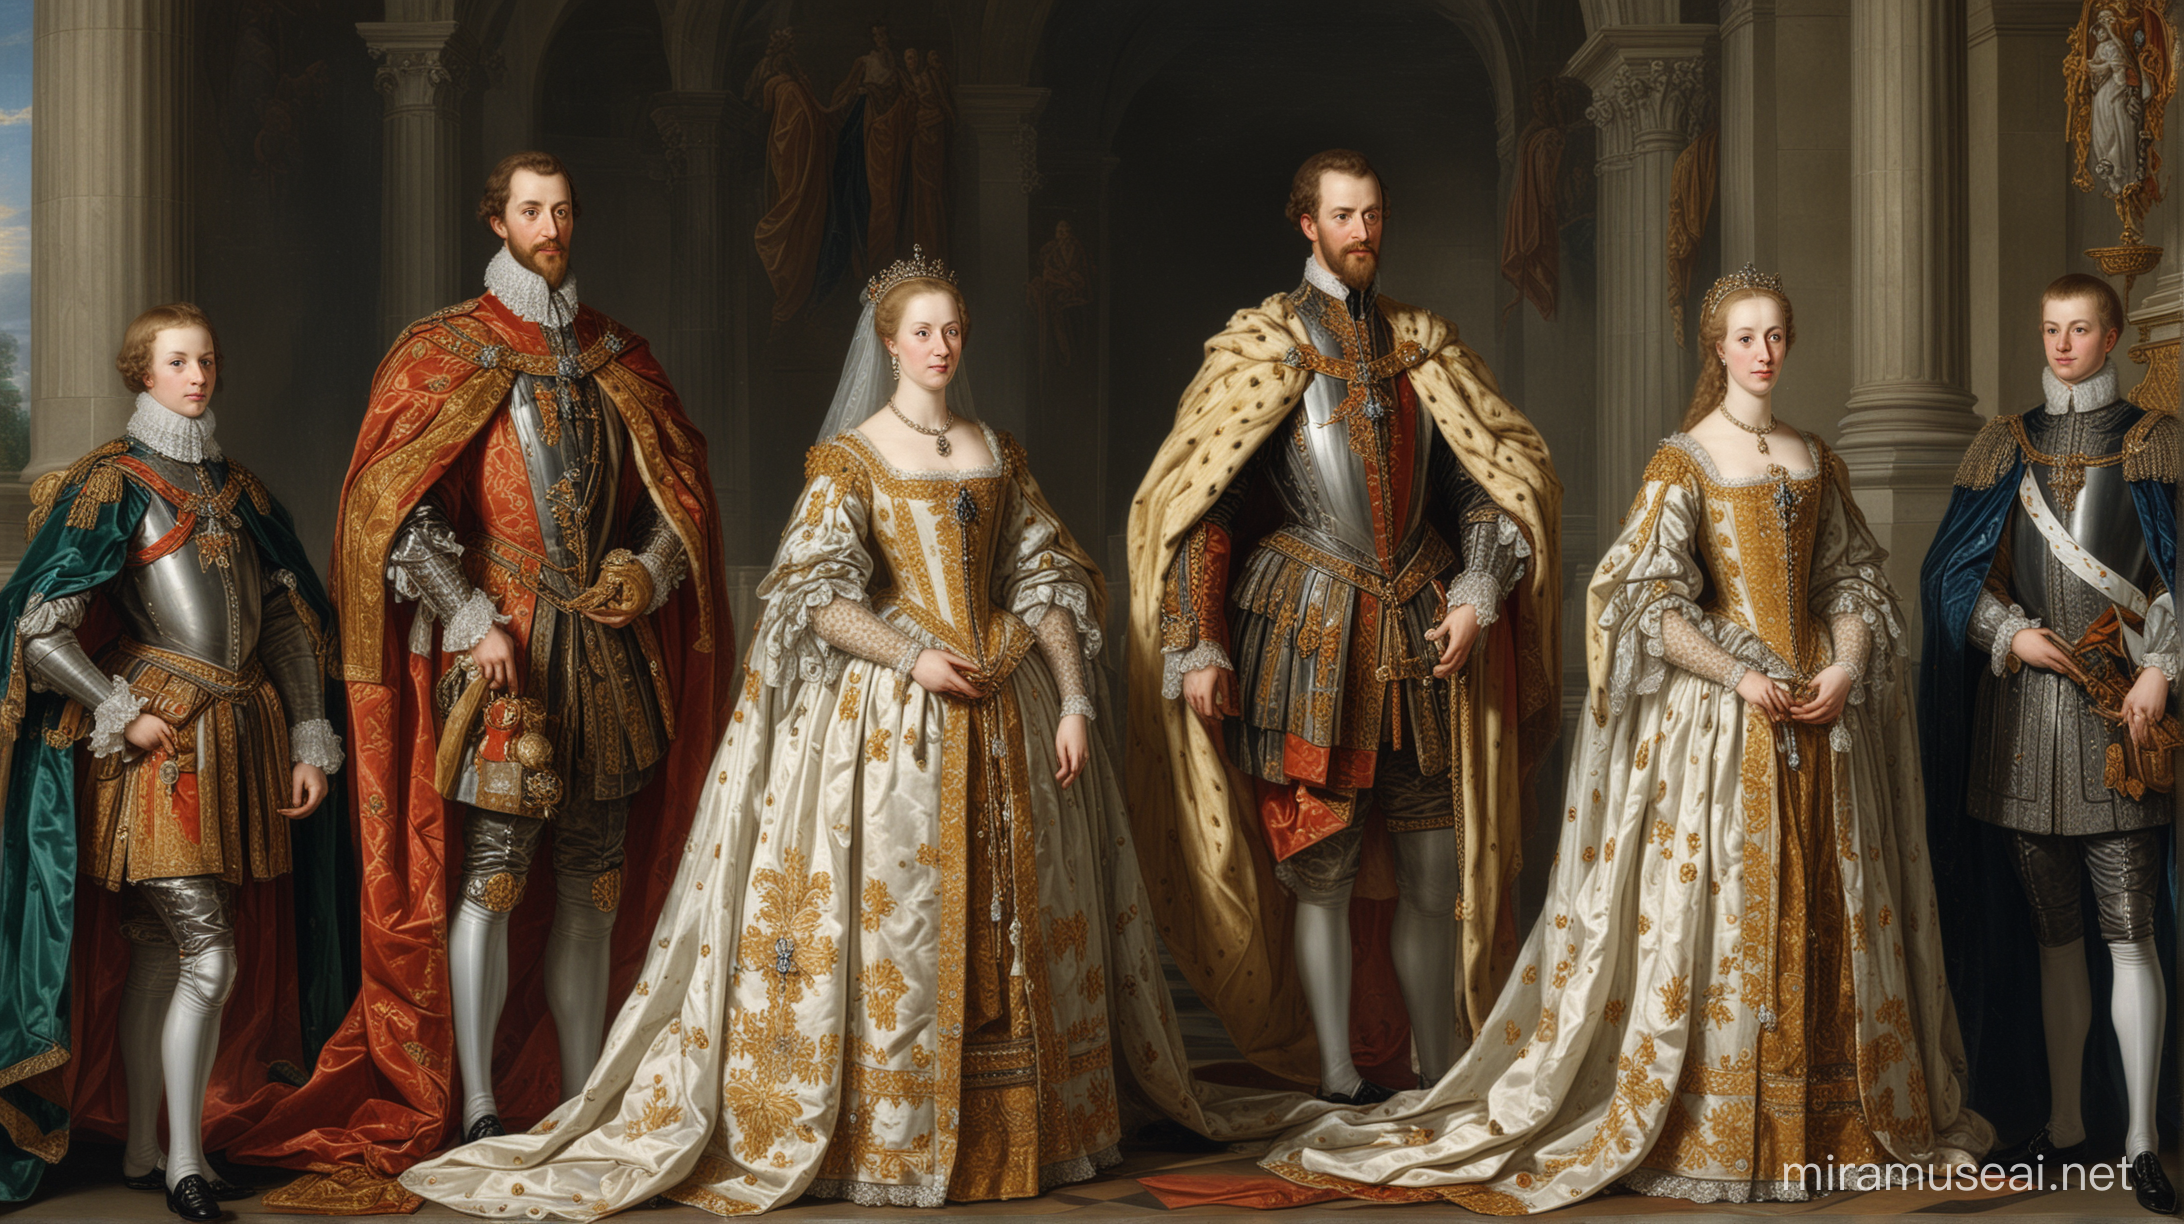 Una de las familias más influyentes en el Sacro Imperio fue la familia Habsburgo. Durante siglos, los Habsburgo ejercieron un poder considerable y tomaron decisiones importantes para el país. Su influencia se extendió a través de alianzas matrimoniales, conquistas militares y acuerdos políticos.